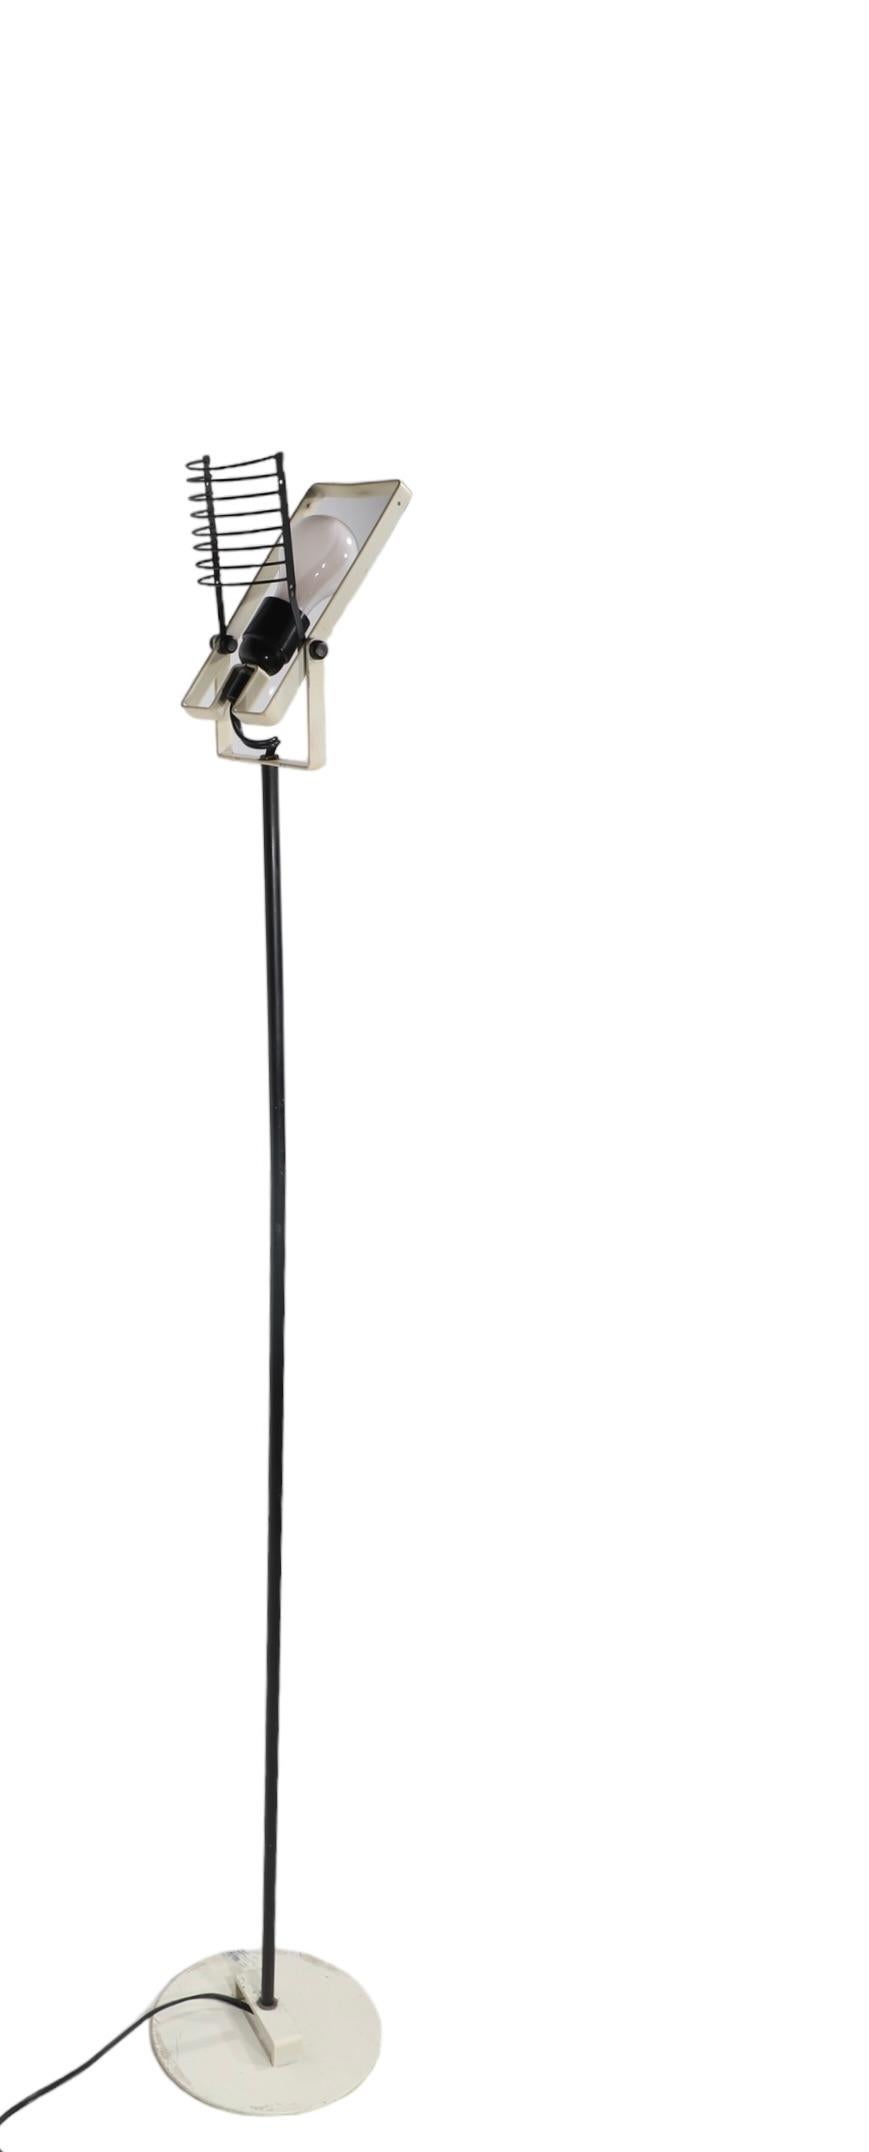 Post Modern  Lampadaire Sintesi de fabrication italienne, conçu par Ernesto Gismondi pour Artimidi vers les années 1970.
 La lampe est dotée d'un abat-jour ouvert en forme de cage, qui s'incline, et d'une structure inclinable qui abrite l'ampoule.